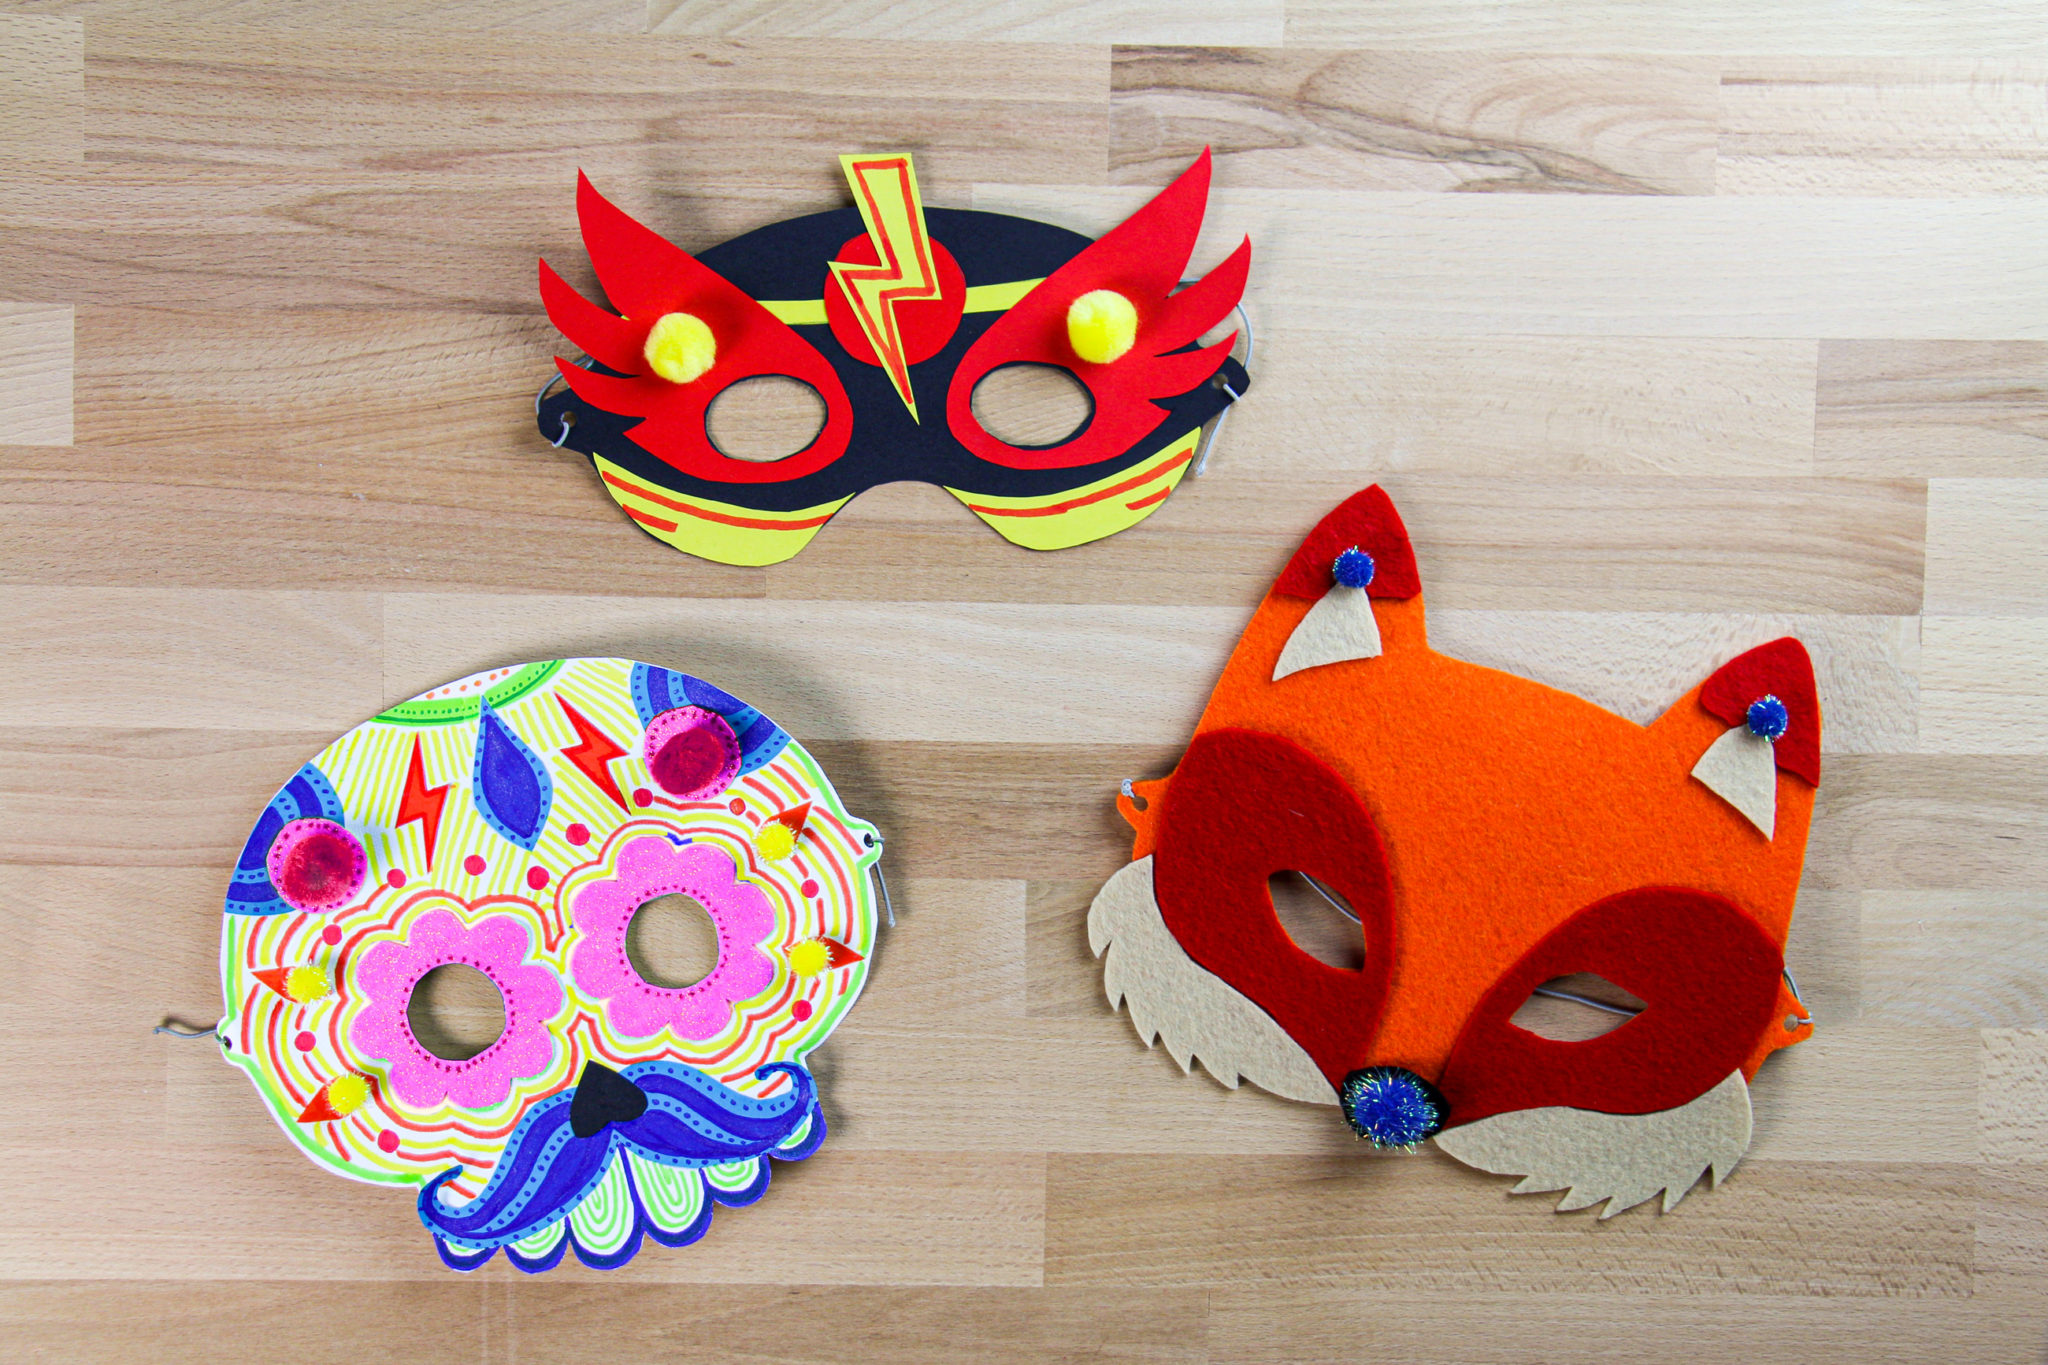 DIY masque carnaval pour enfant facile à réaliser 